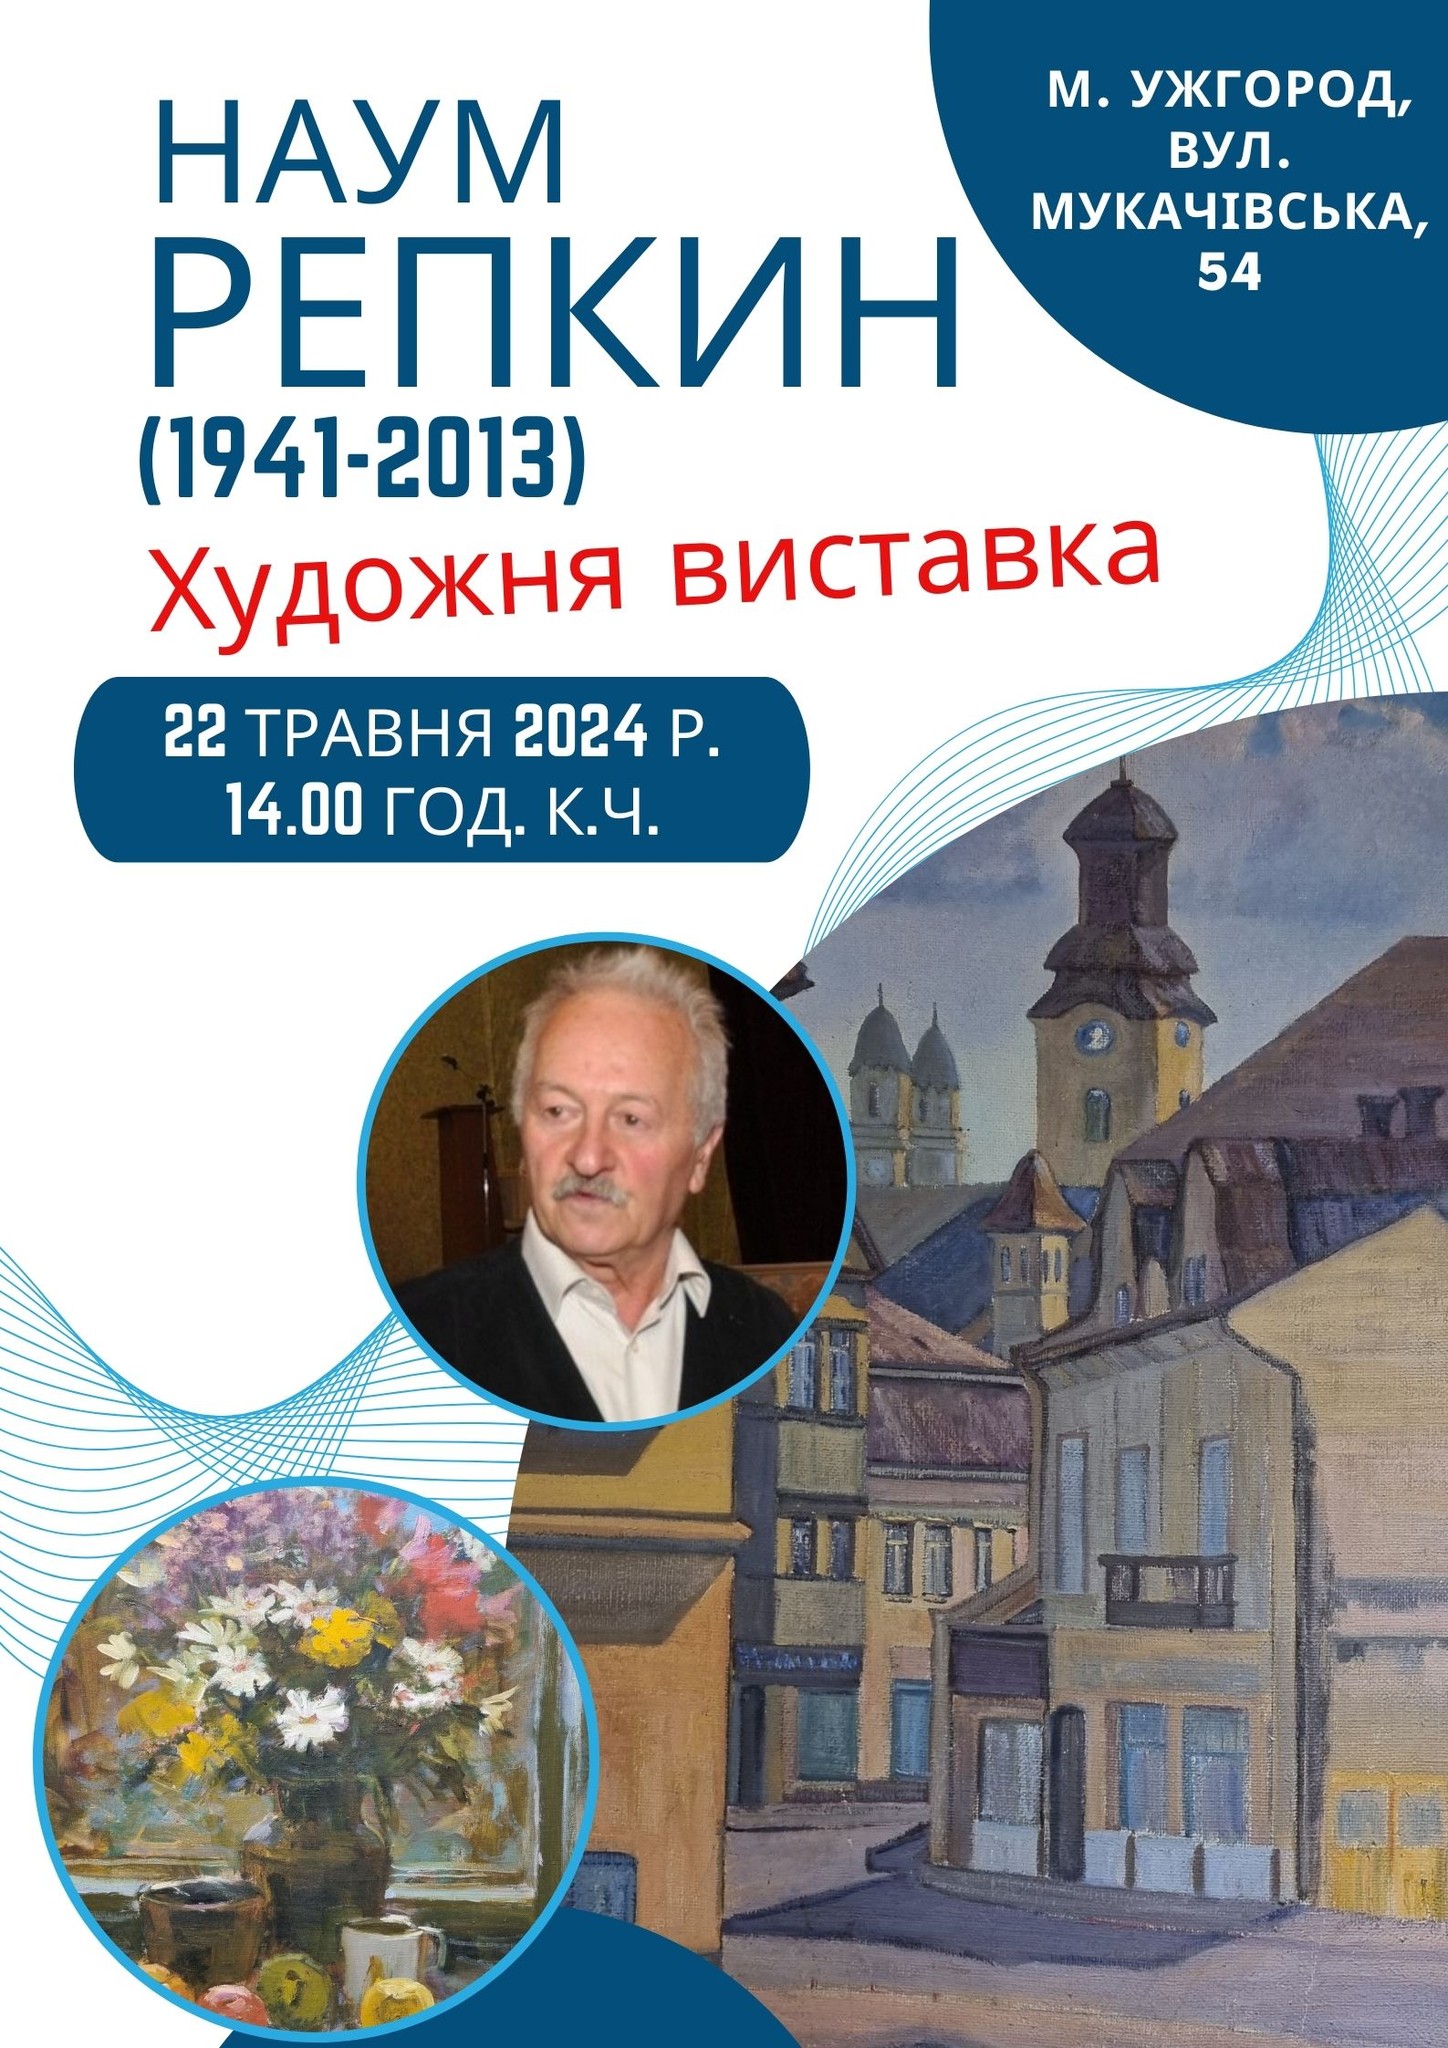 Виставка робіт Наума Репкіна відбудеться в Ужгороді 22 травня 